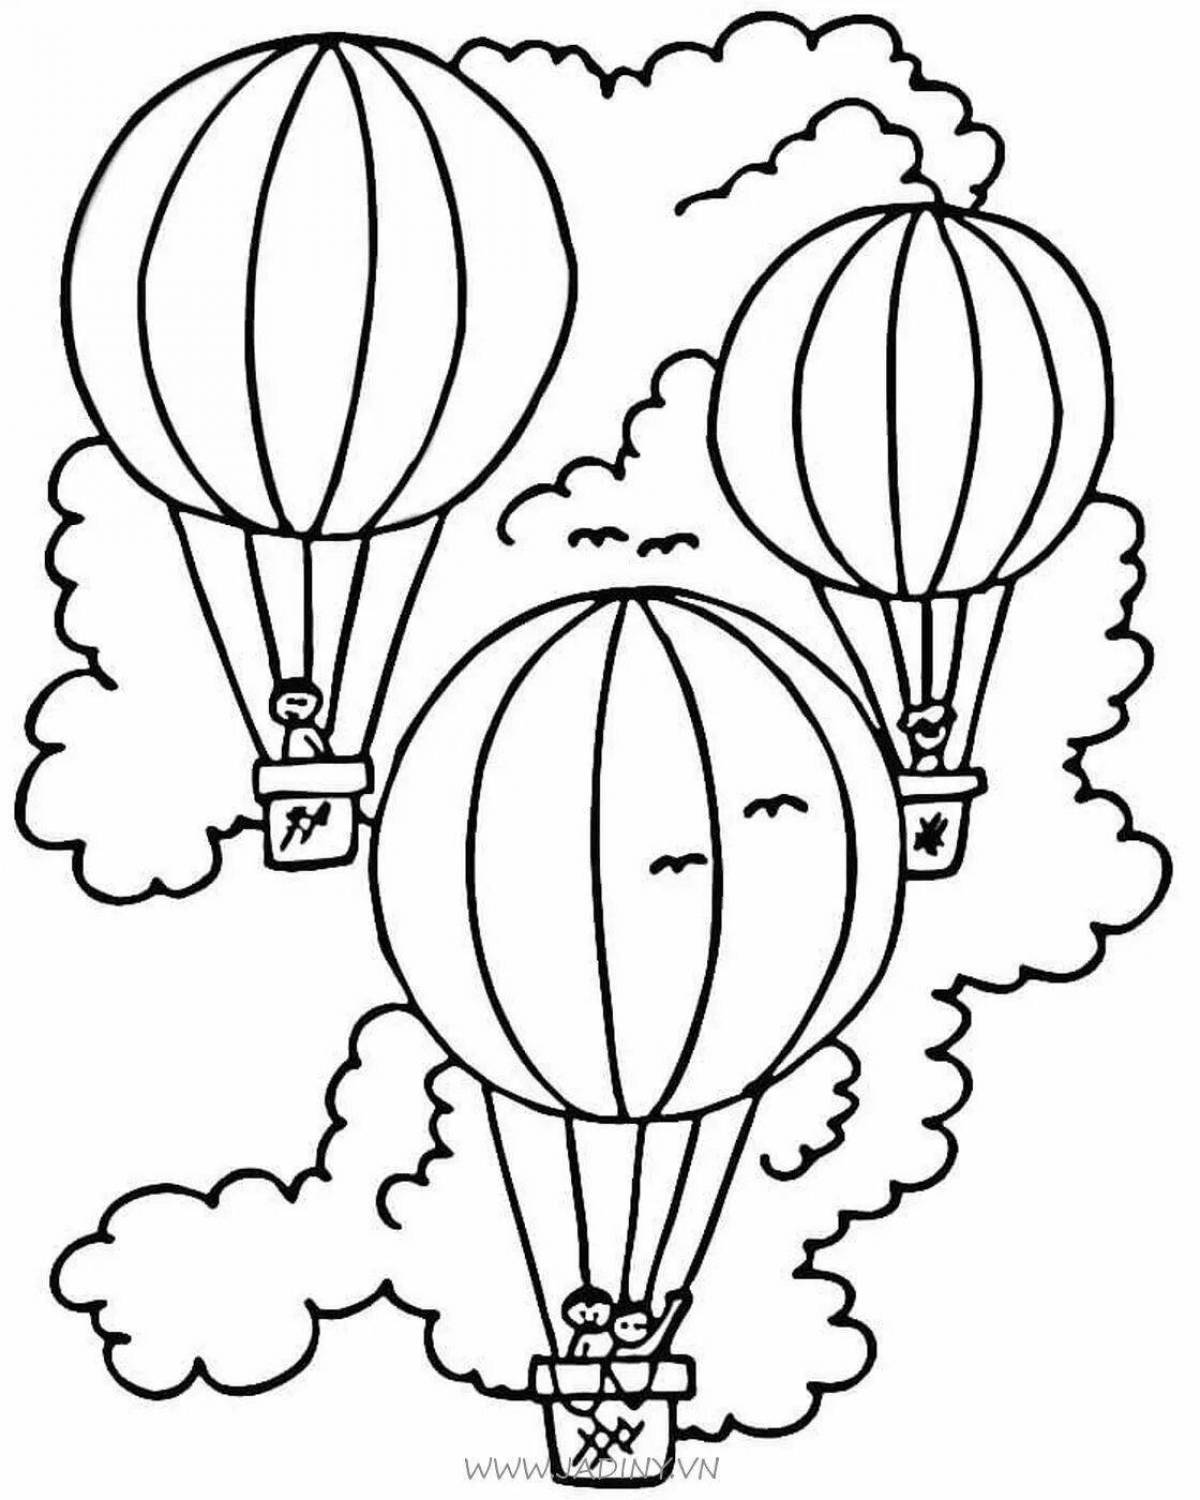 Fun balloon drawing